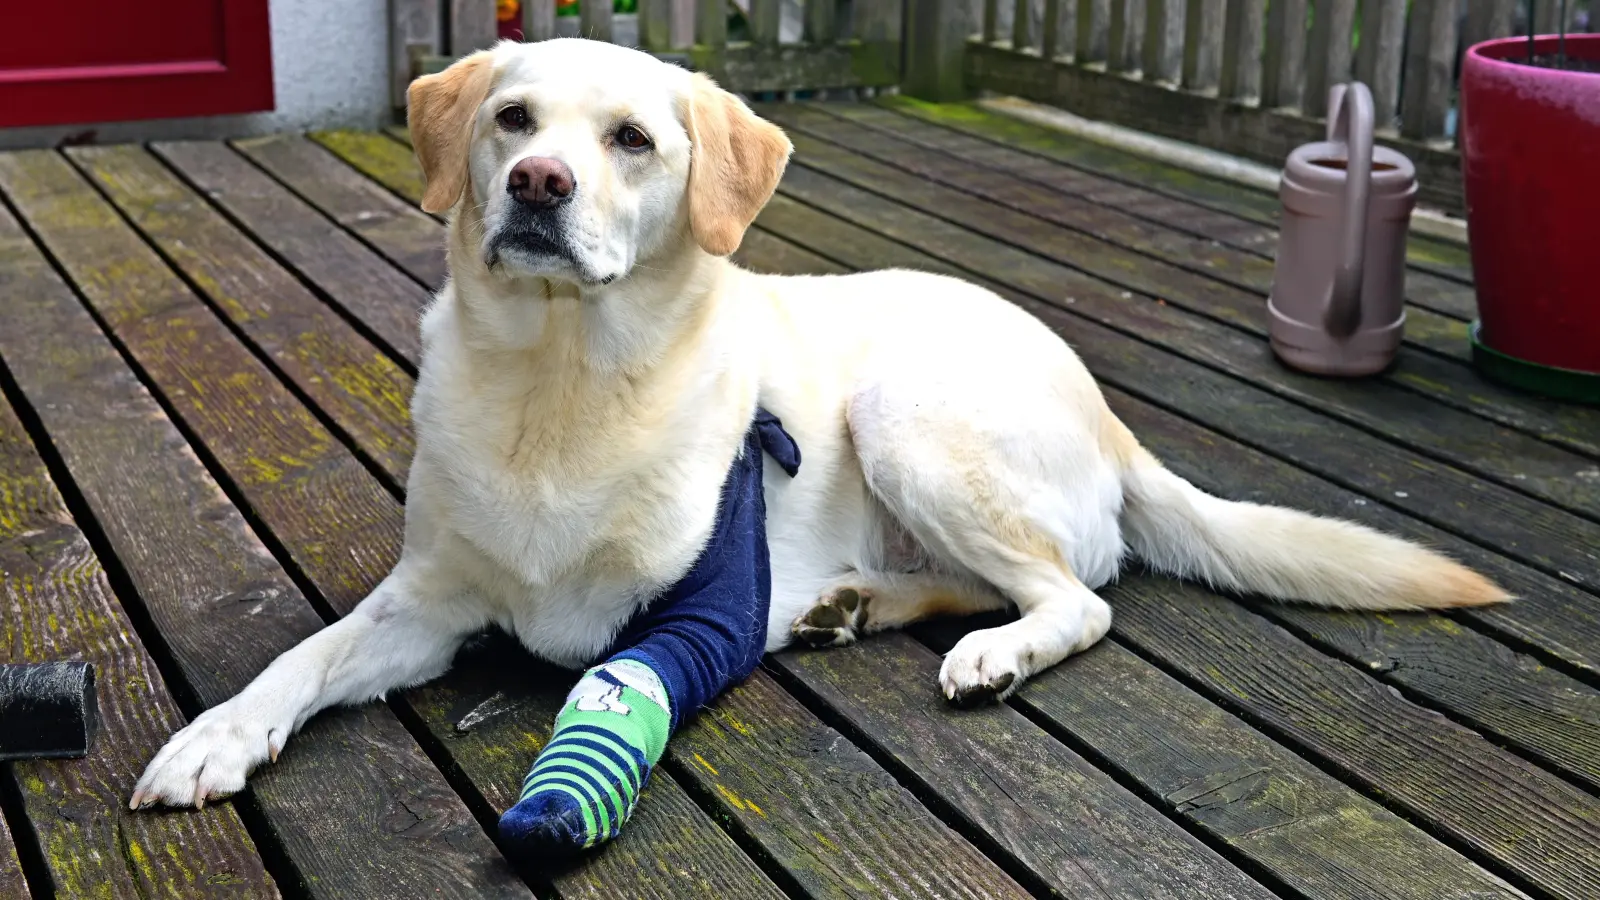 Die Wunde am Bein ist noch immer verbunden, doch für Labrador Yoko geht es nach dem schlimmen Vorfall gesundheitlich Tag für Tag bergauf. (Foto: Jim Albright)